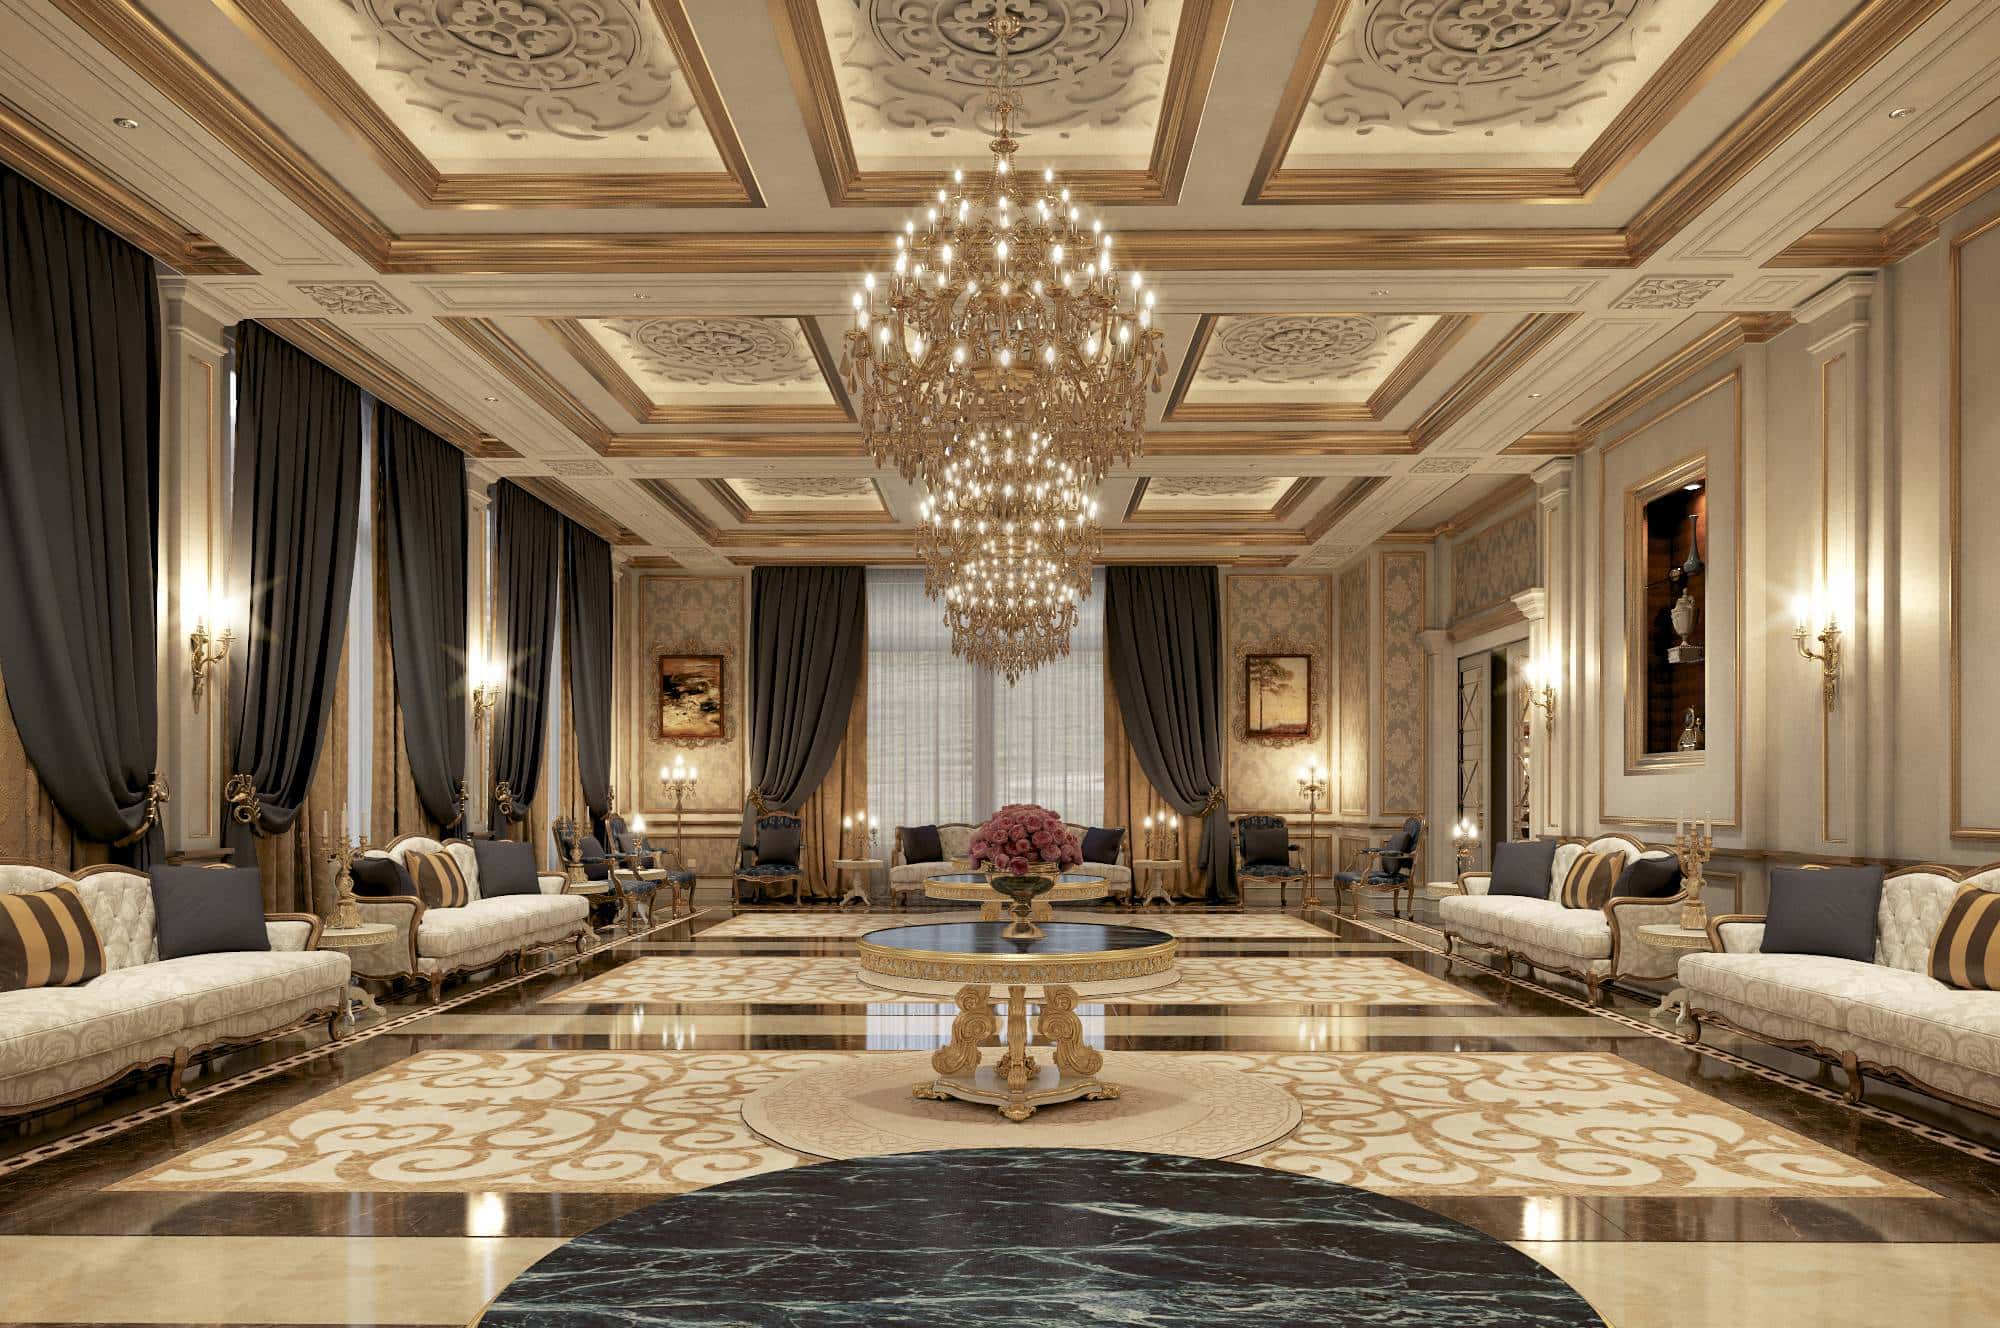 意大利品质设计、法式品味皇家经典豪华家居装饰装修、金色华丽的大理石珍珠母、金色永恒的传统面料、高端品质顶级最佳室内设计顾问服务